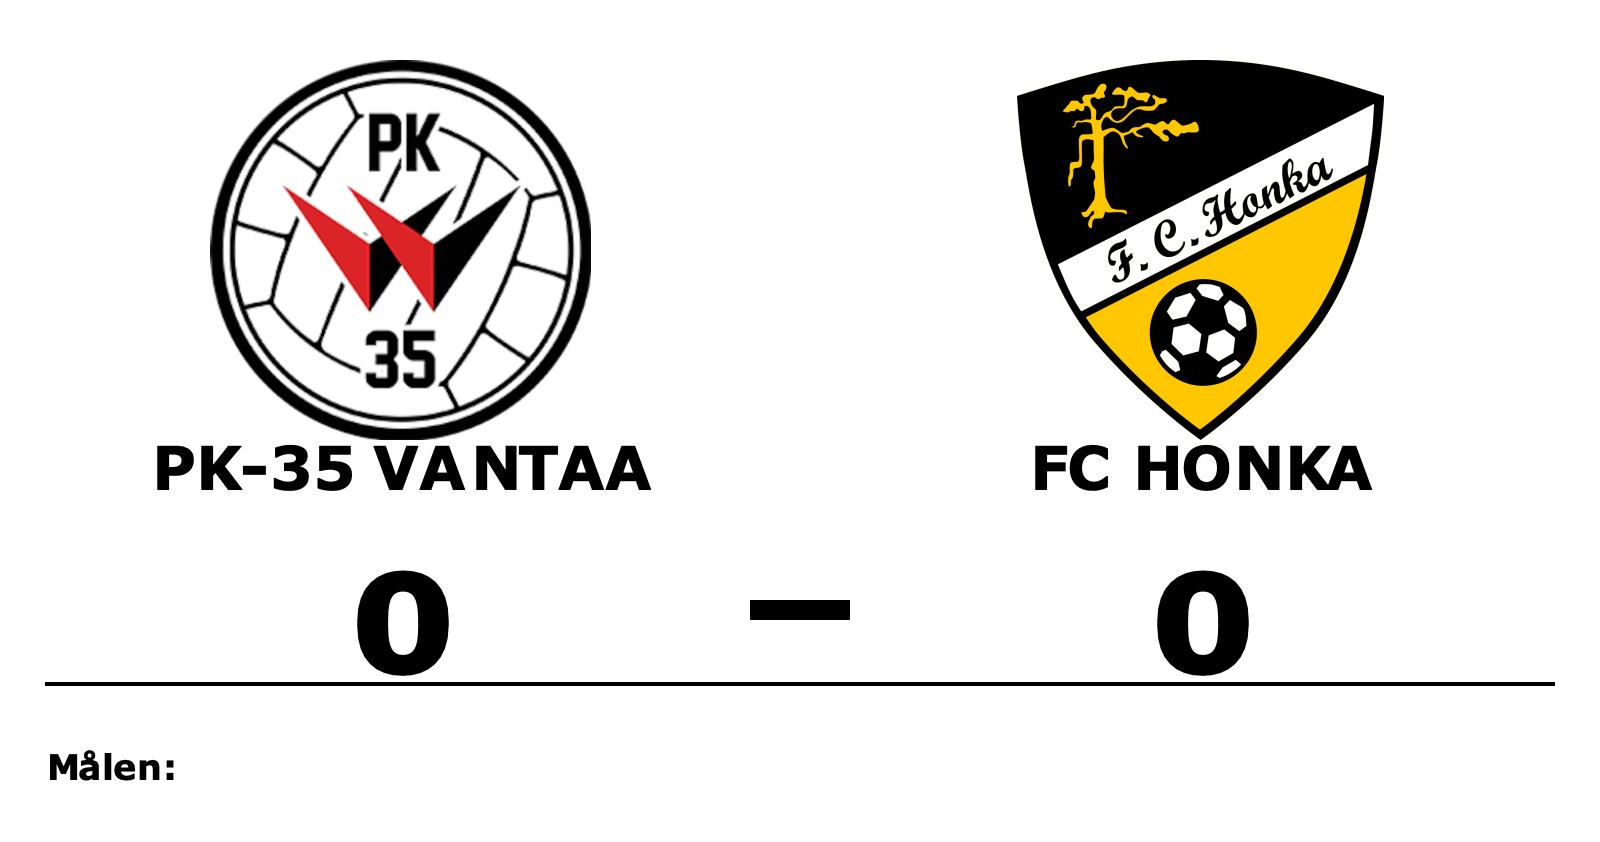 PK-35 Vantaa spelade lika mot FC Honka